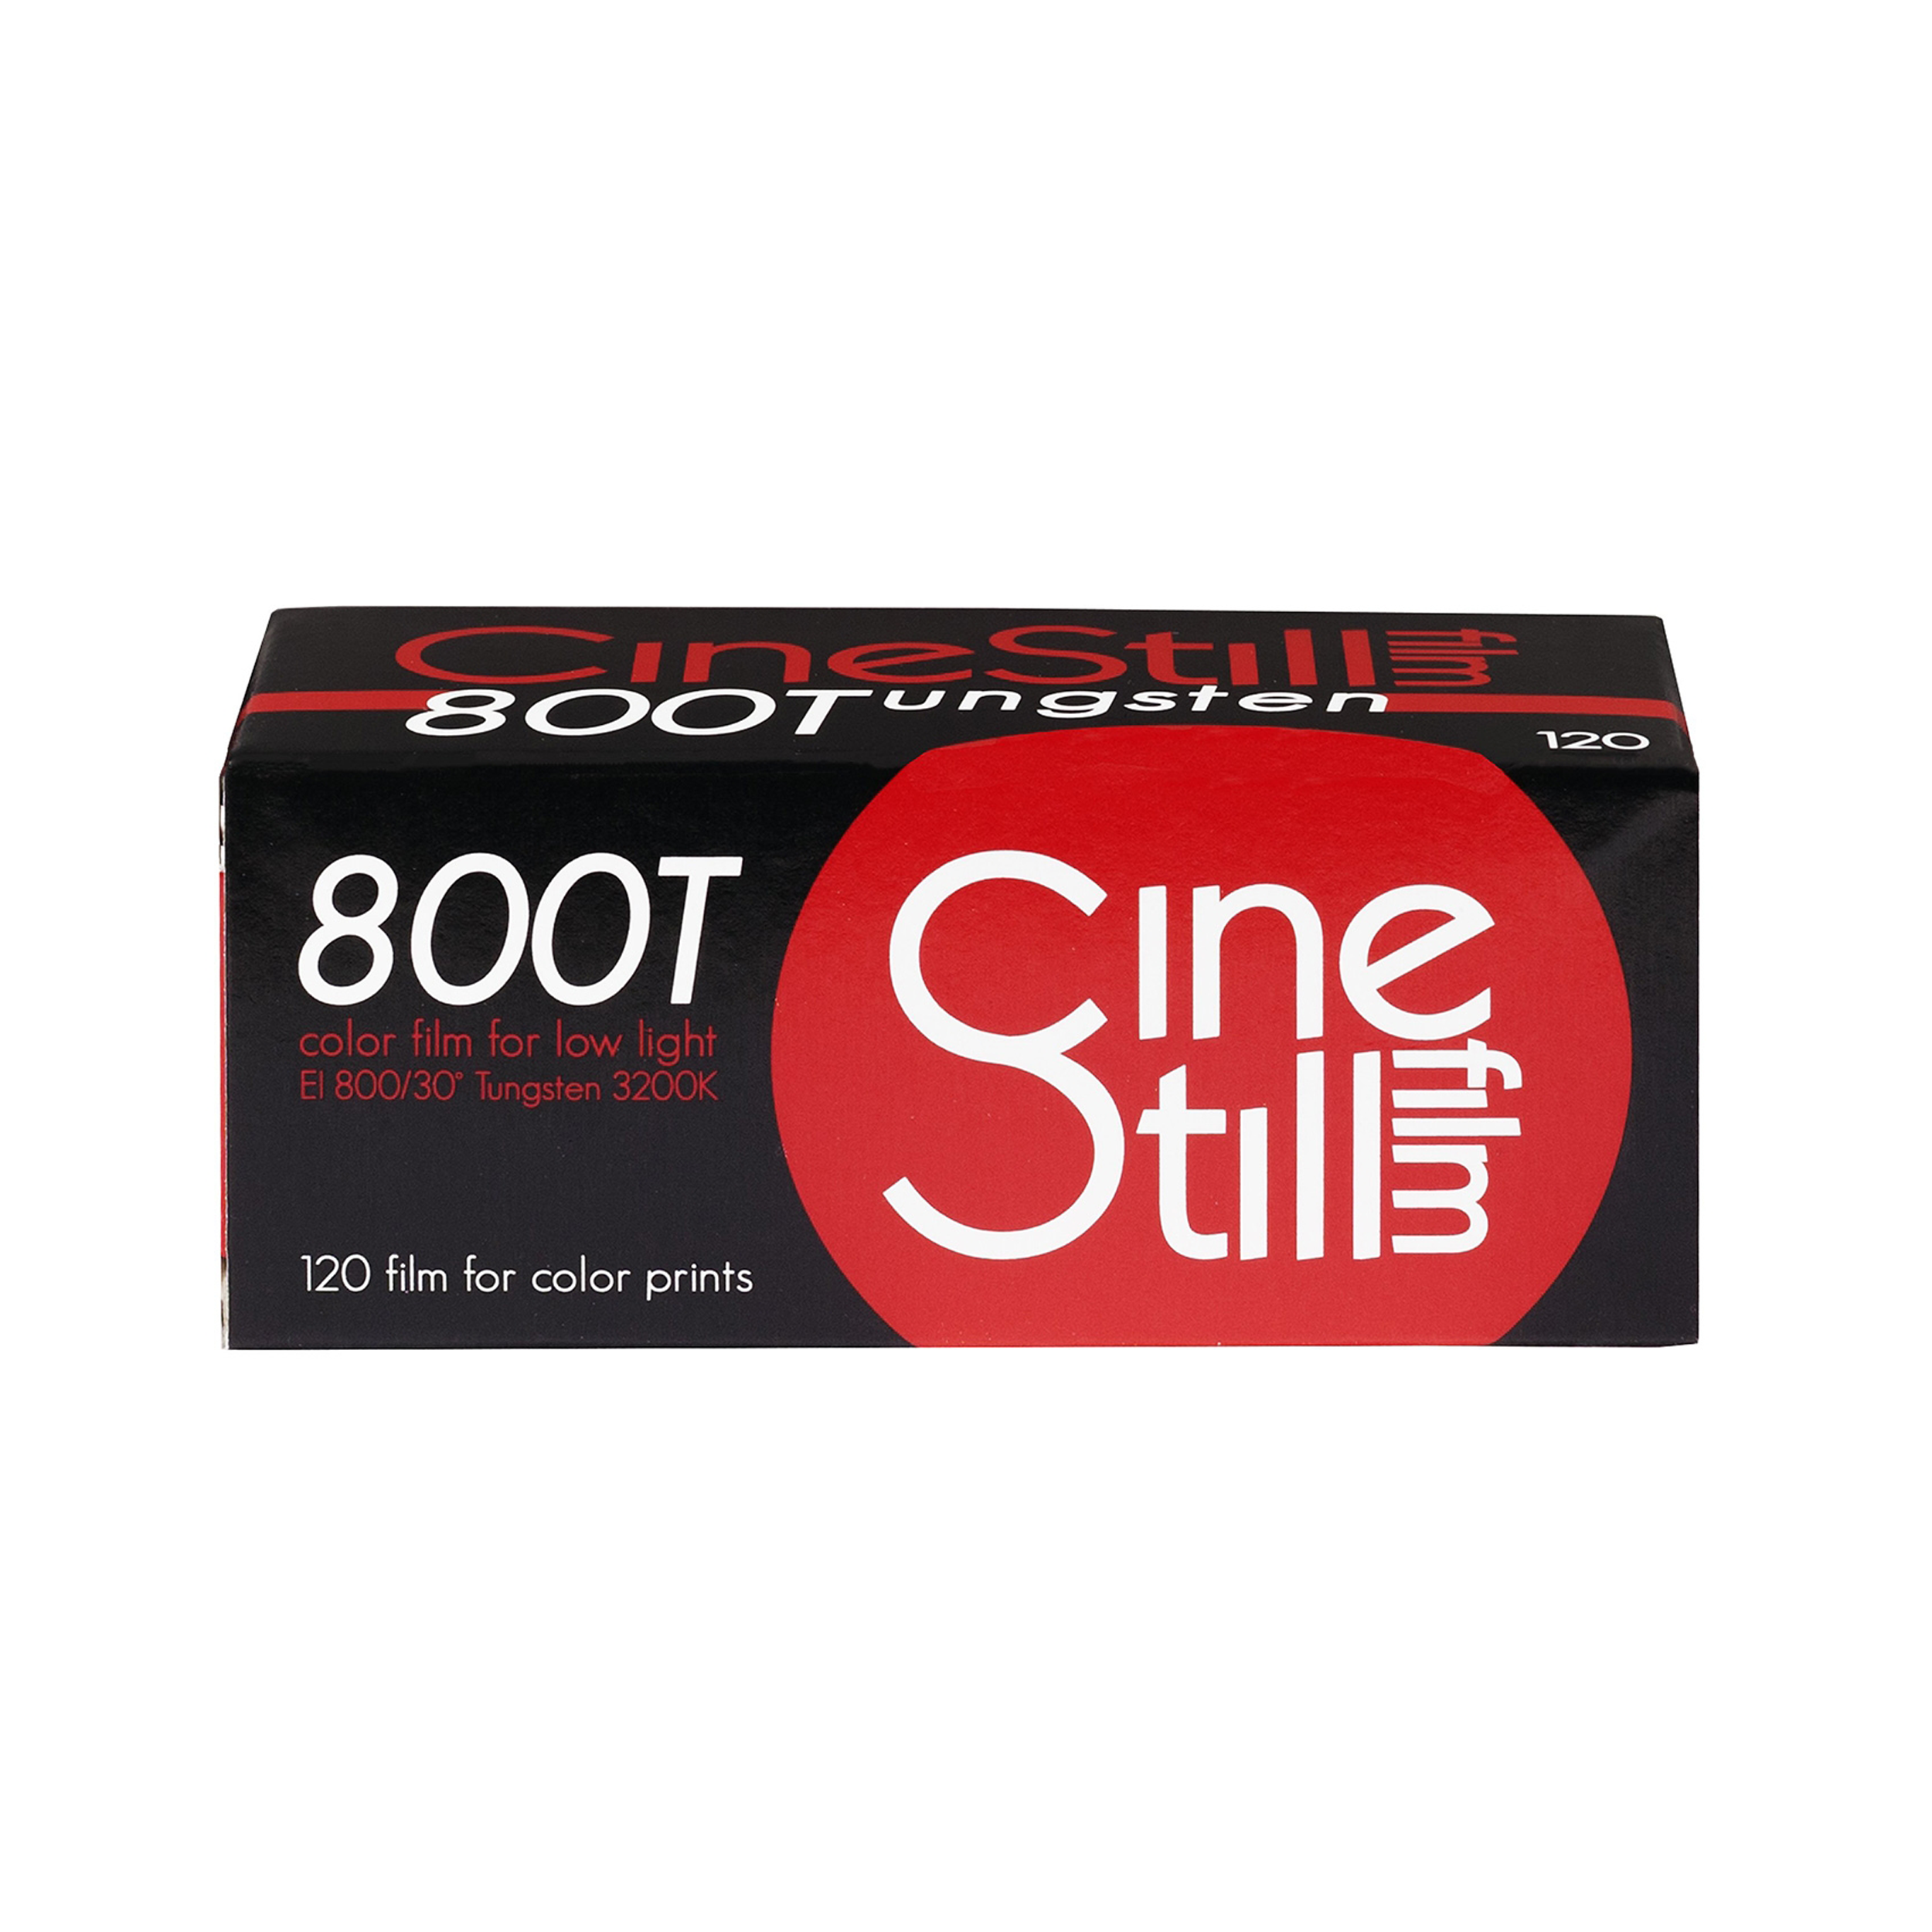 CineStill 800tungsten High Speed Color Negative Film, Iso 800 120 Roll